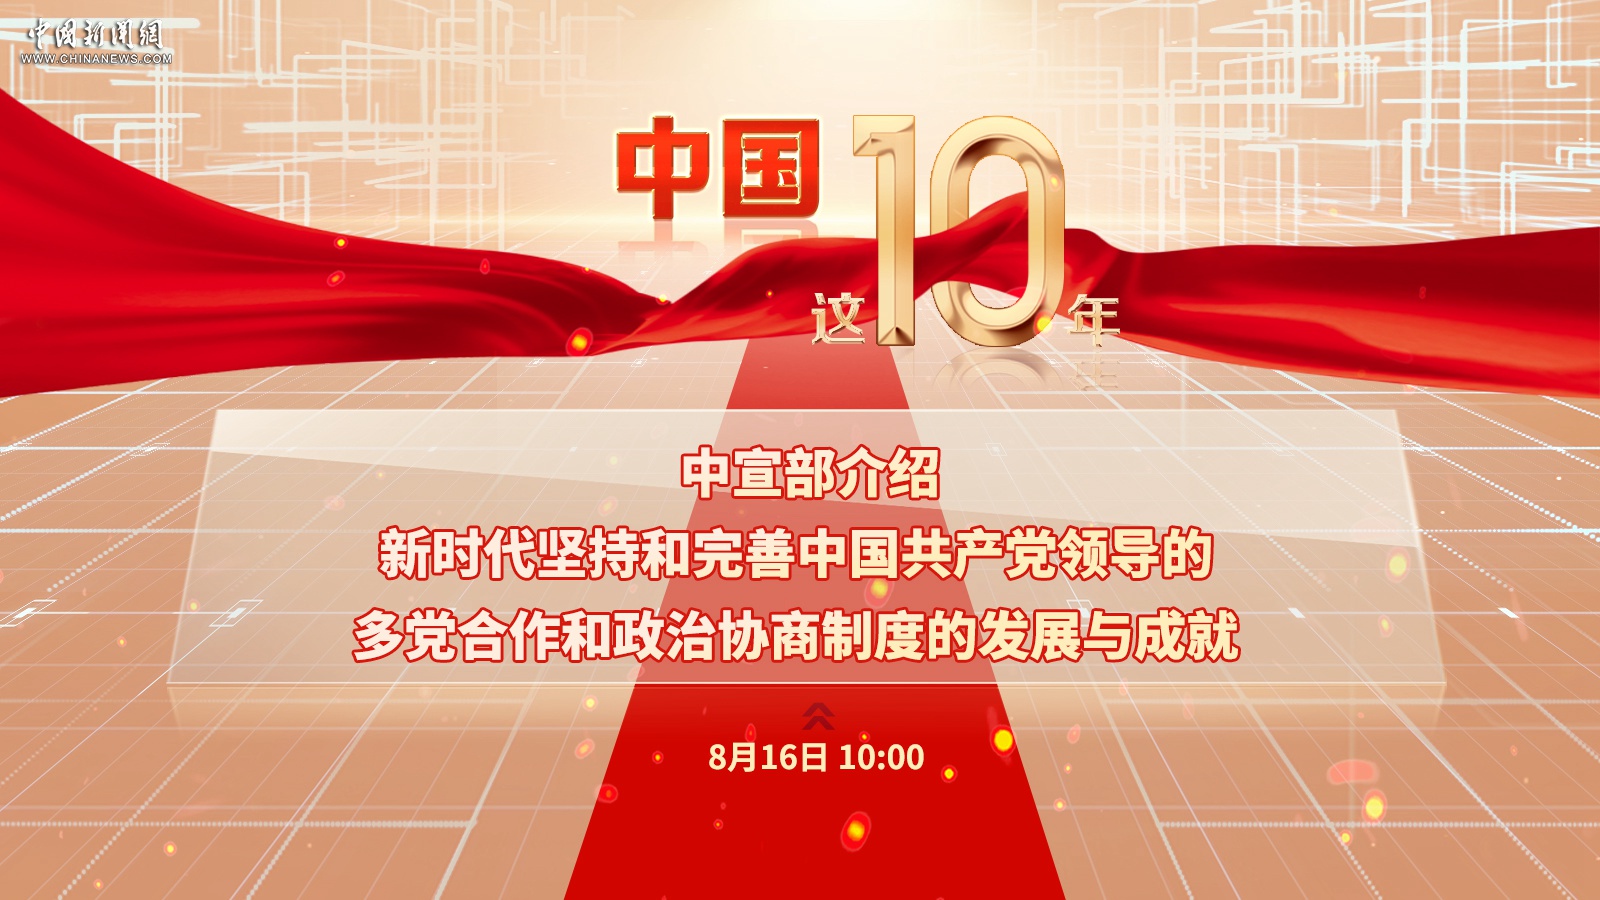 中宣部介绍新时代坚持和完善中国共产党领导的多党合作和政治协商制度的发展与成就